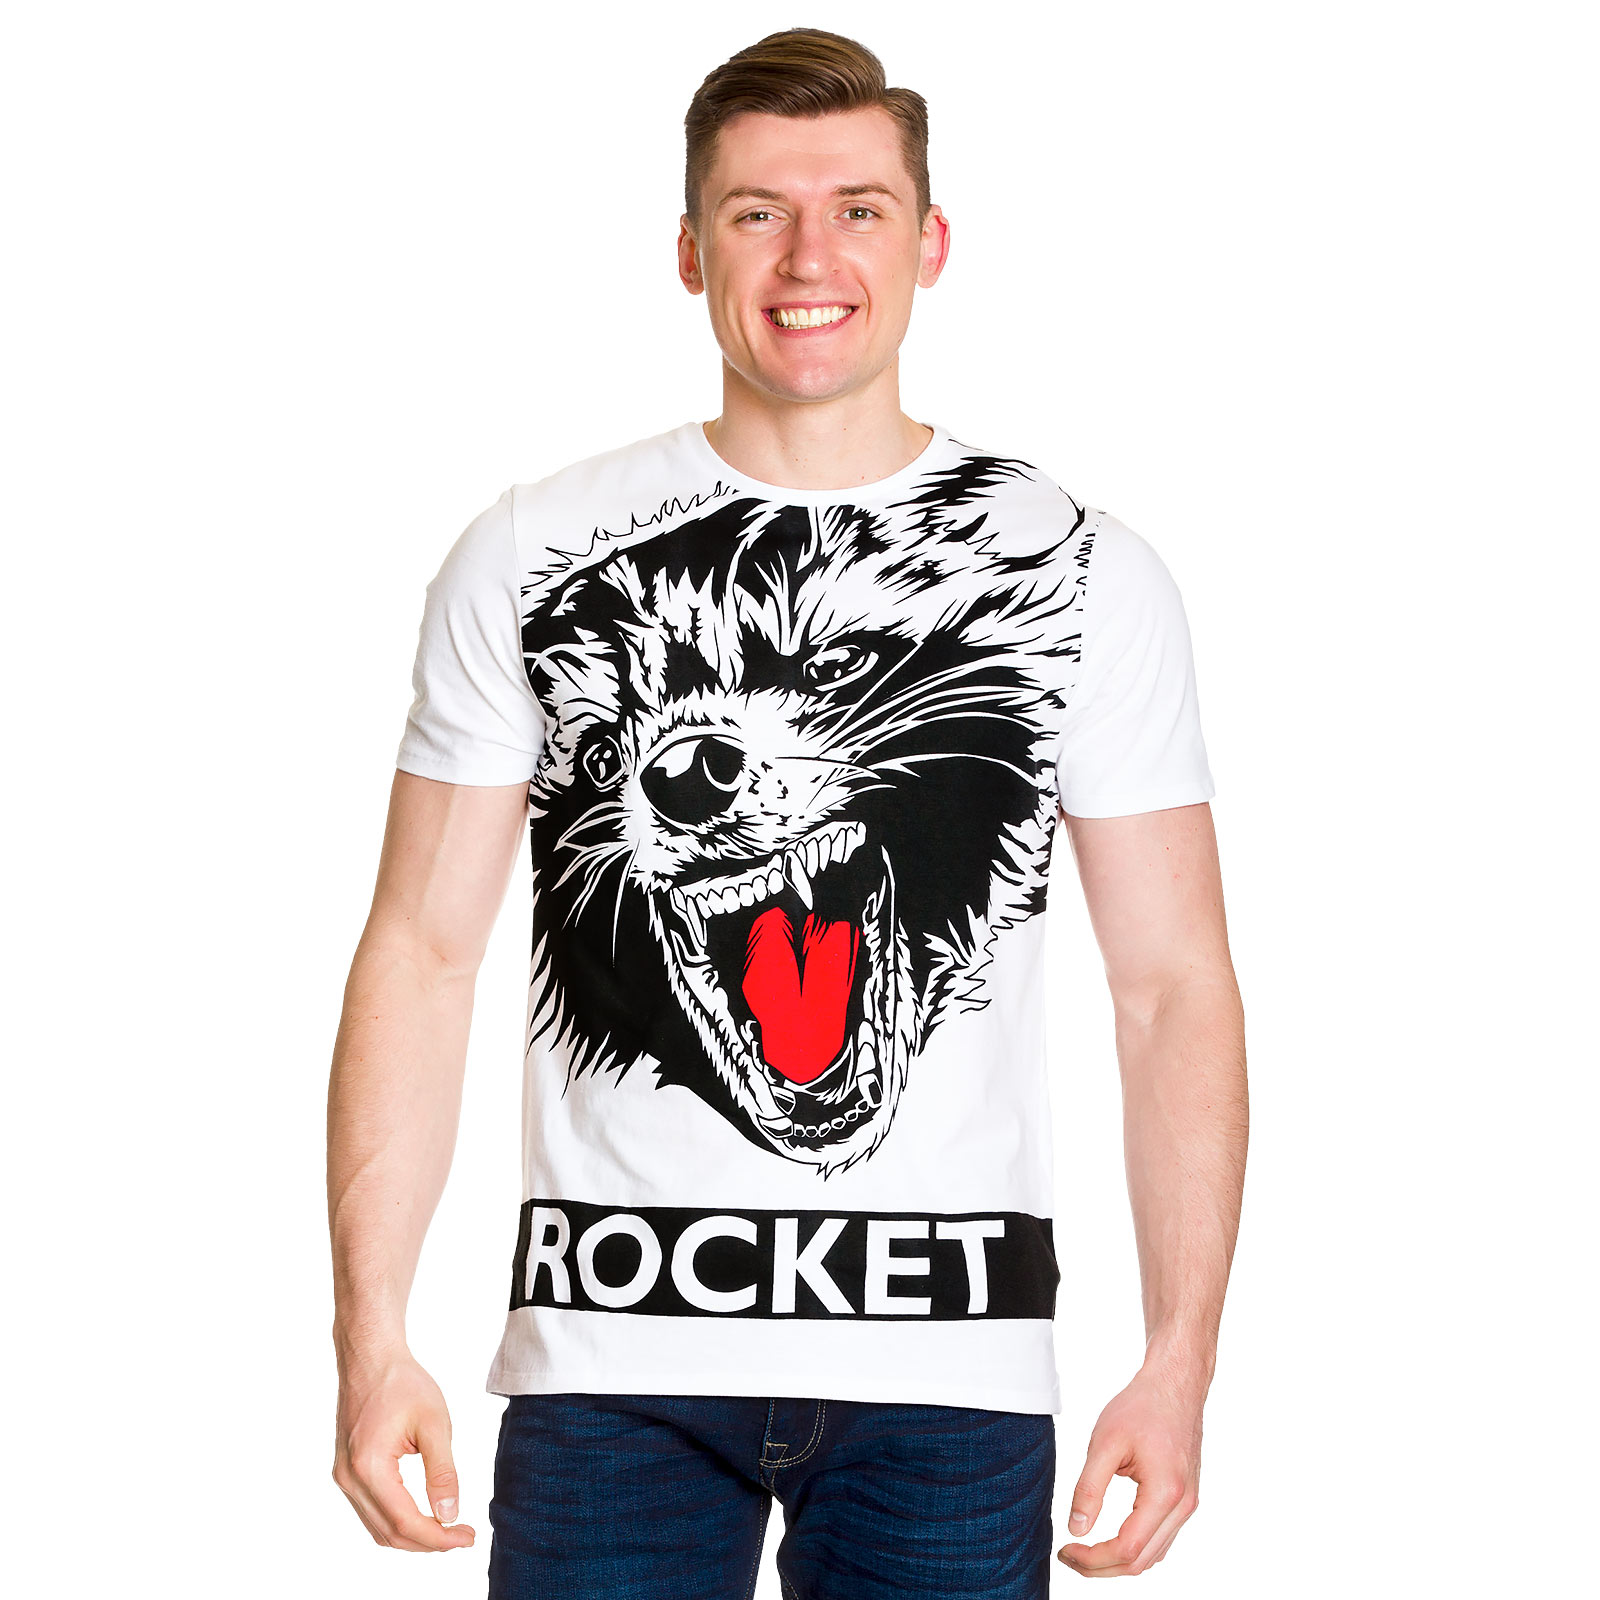 Les Gardiens de la Galaxie - T-shirt Rocket en taille réelle blanc